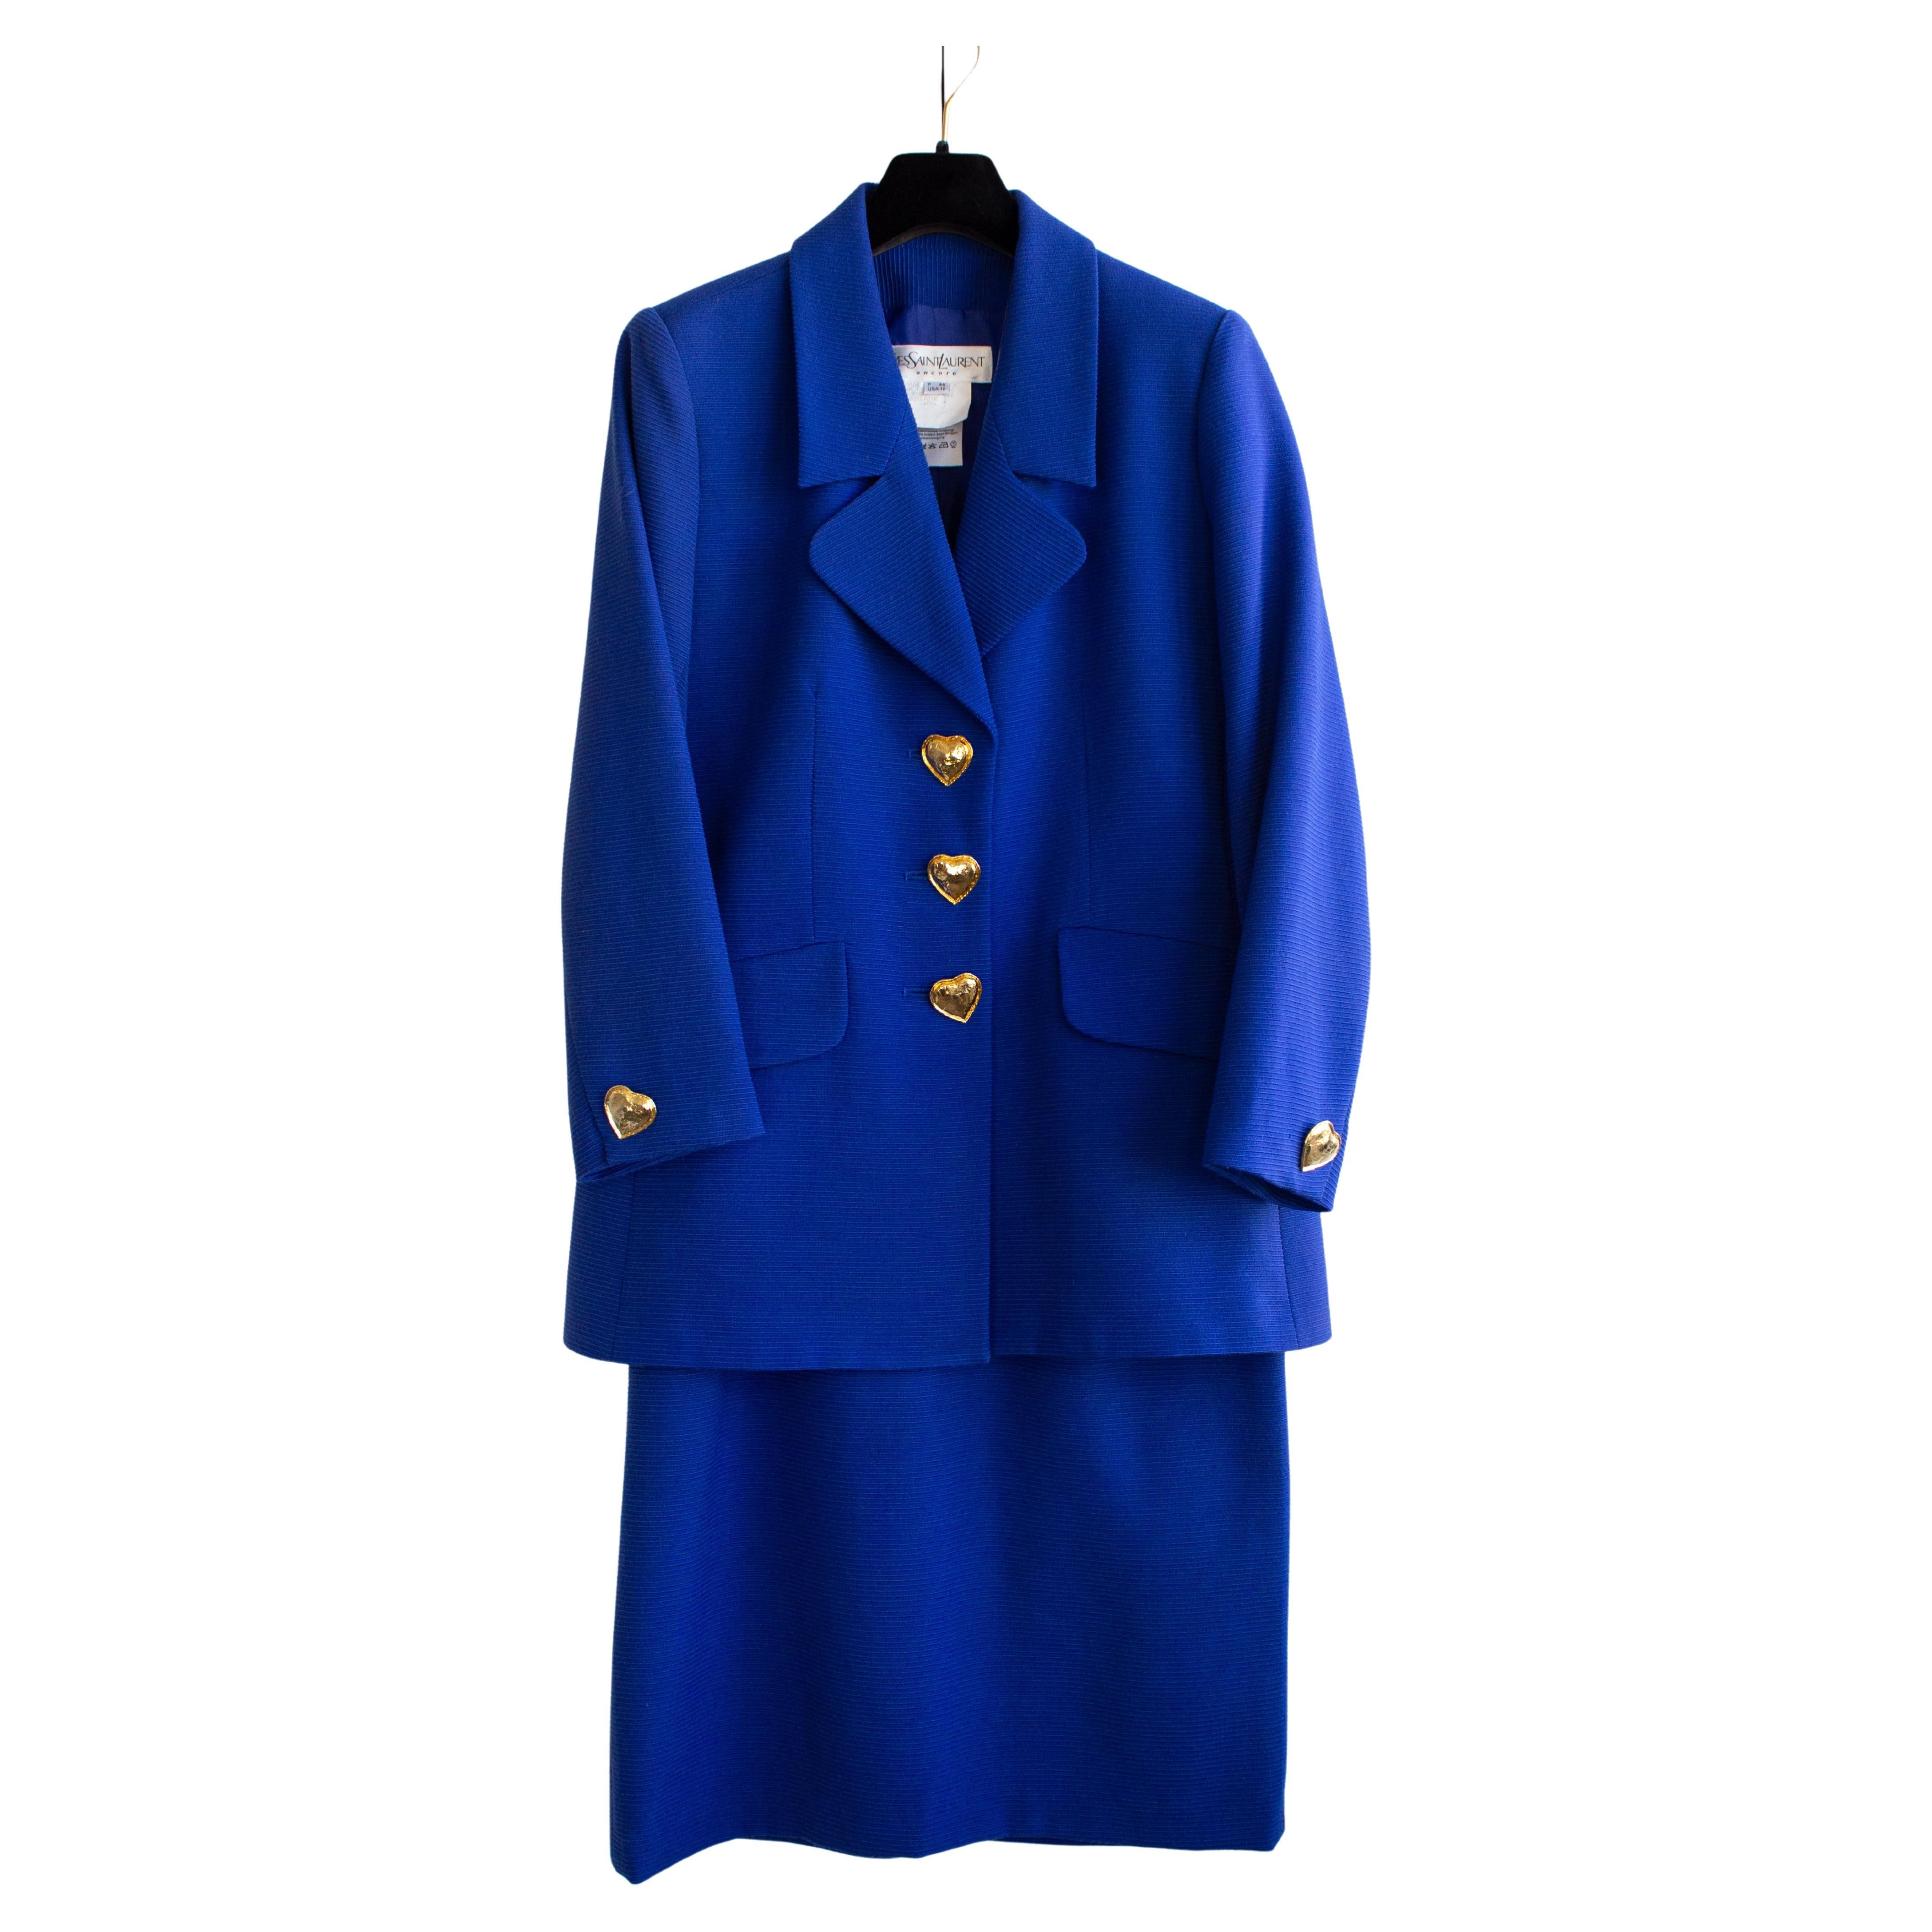 Yves Saint Laurent Encore Vintage S/S 1995 Royal Blue Gold Hearts Jacket Suit For Sale